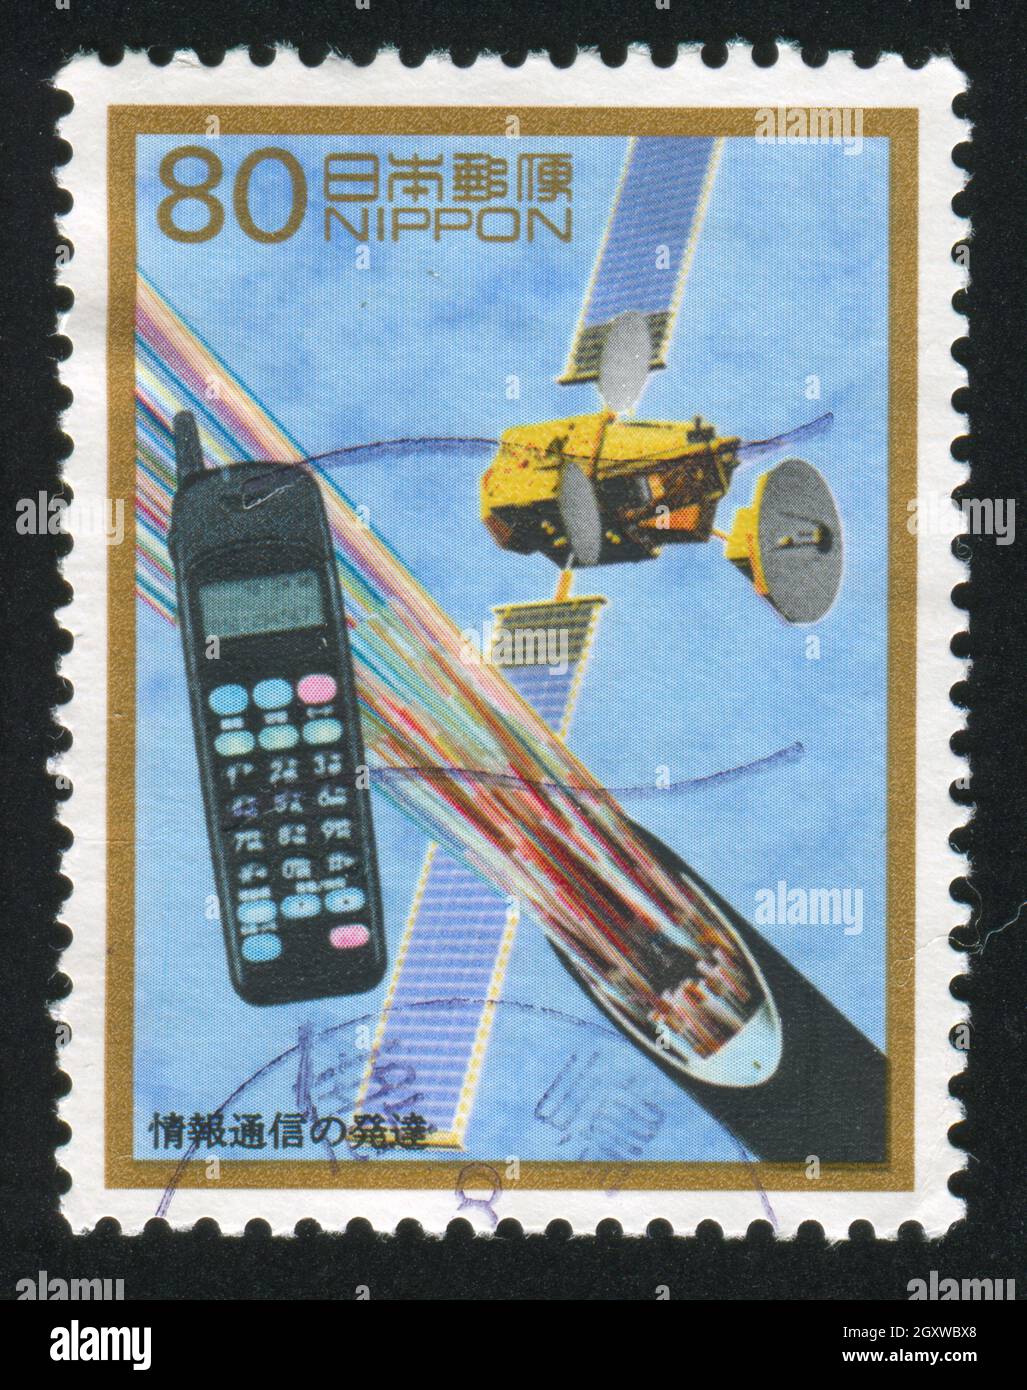 JAPAN - UM 1996: Stempel von Japan zeigt Mobiltelefon, Glasfaserkabel, Satellit im Orbit, um 1996 Stockfoto